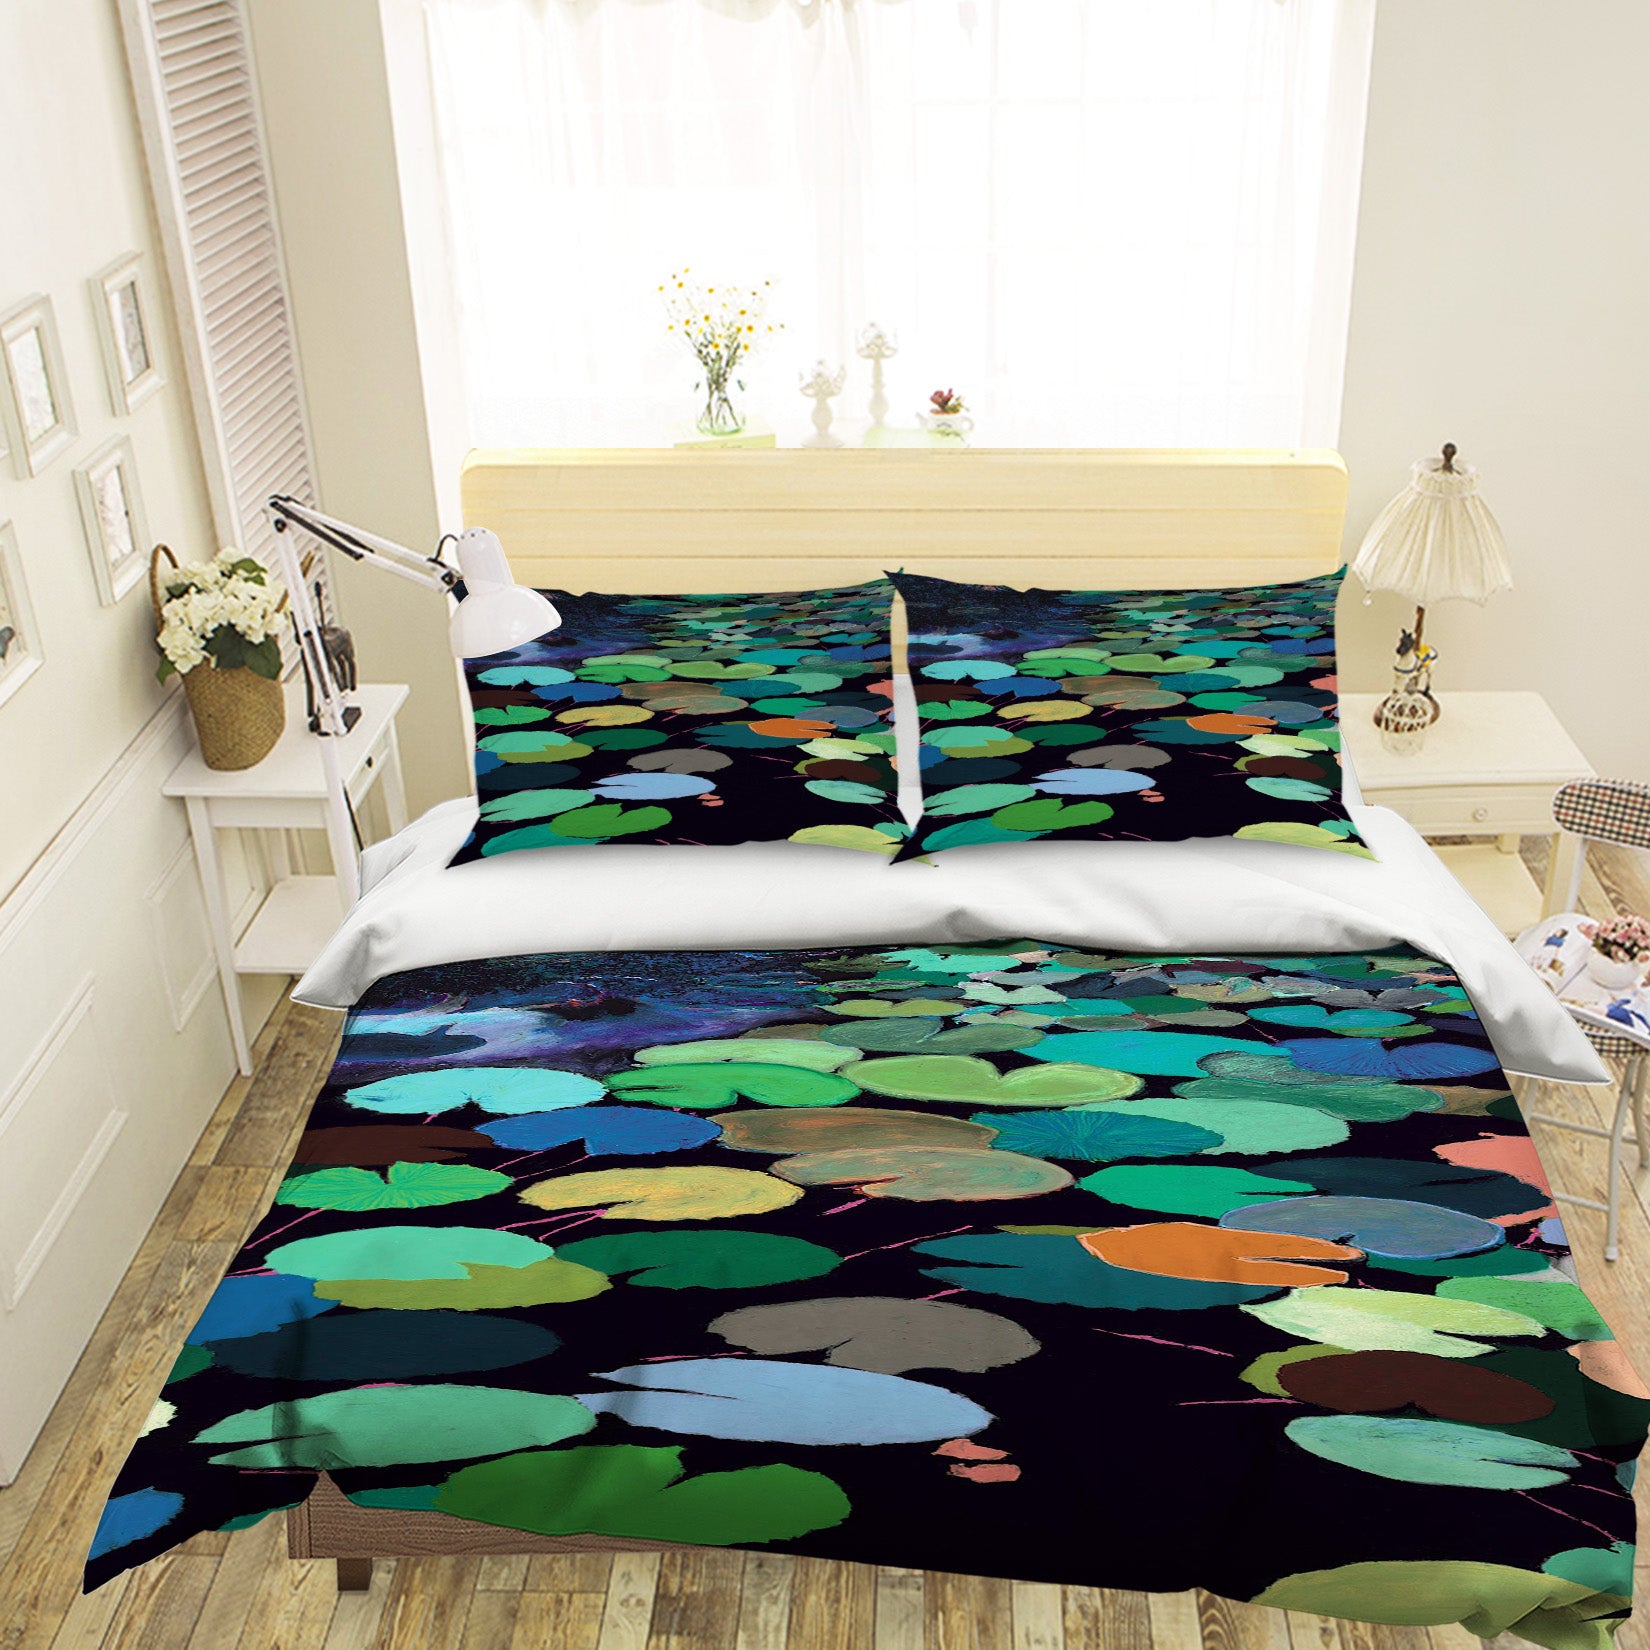 3D Pond Lotus Leaf 1106 Allan P. Friedlander Bedding Bed Pillowcases Quilt